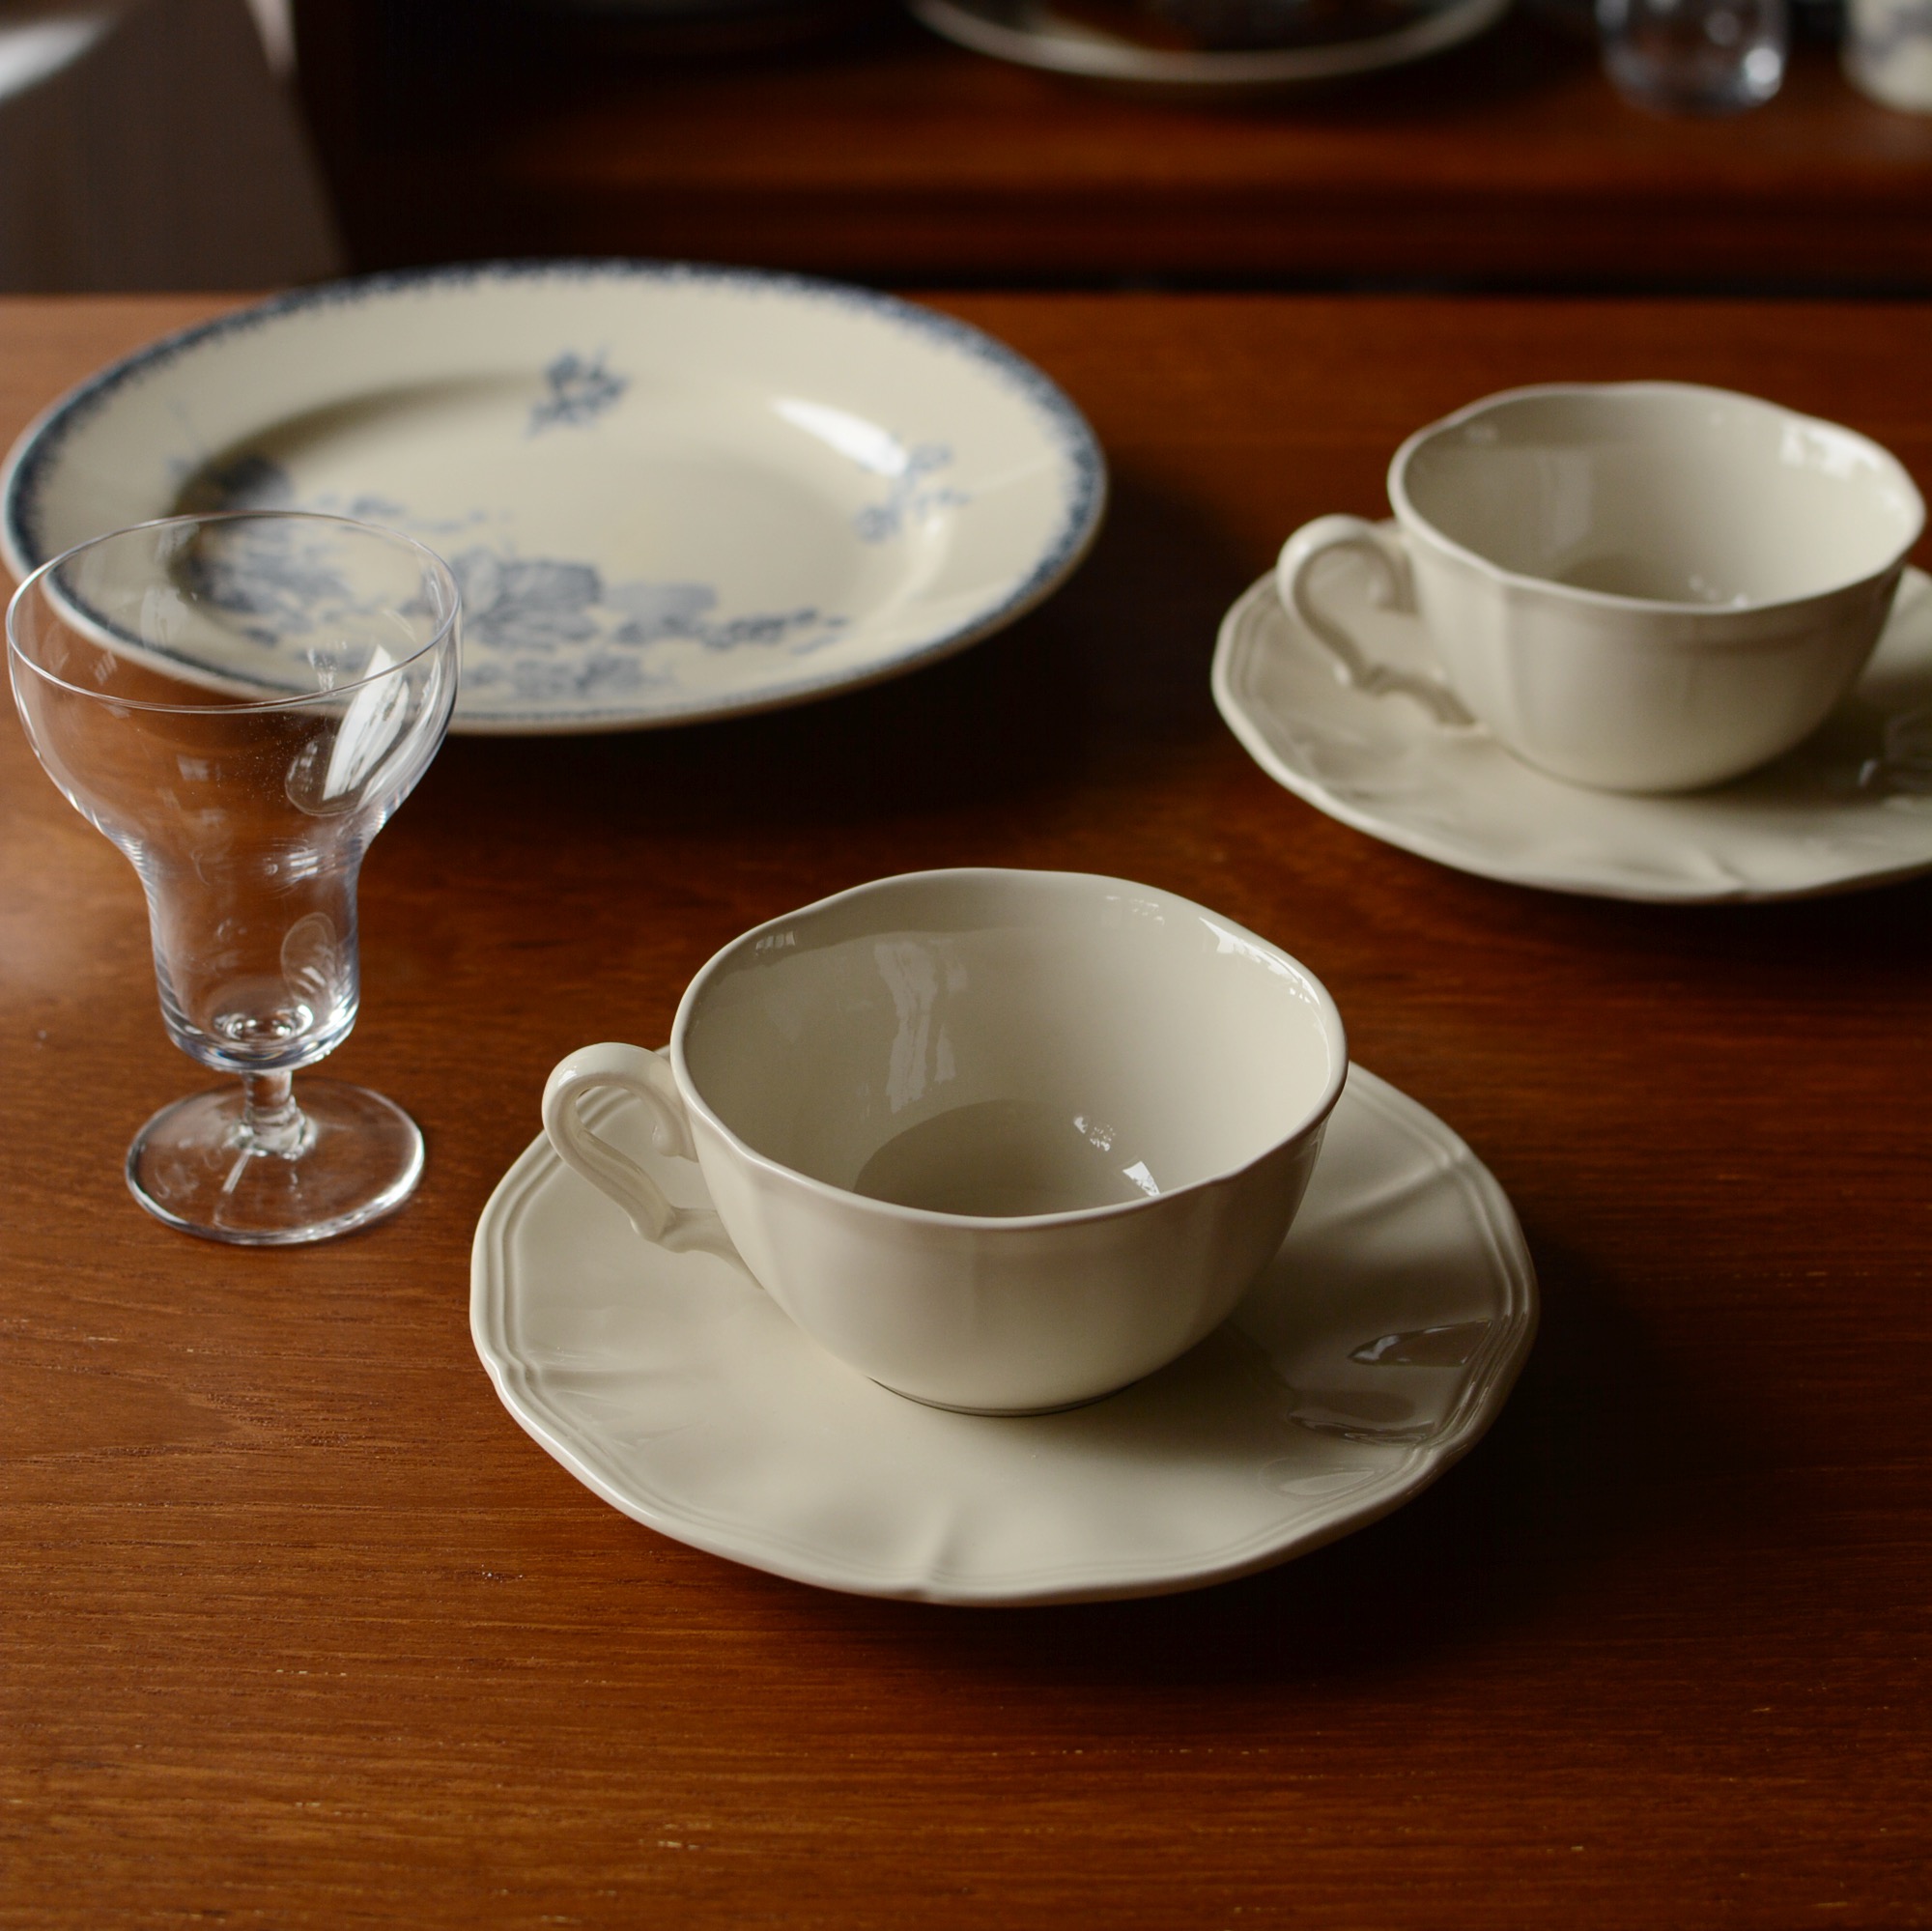 復古歐式風瓷咖啡杯碟 薩爾咖啡杯碟 盡享午後咖啡時光